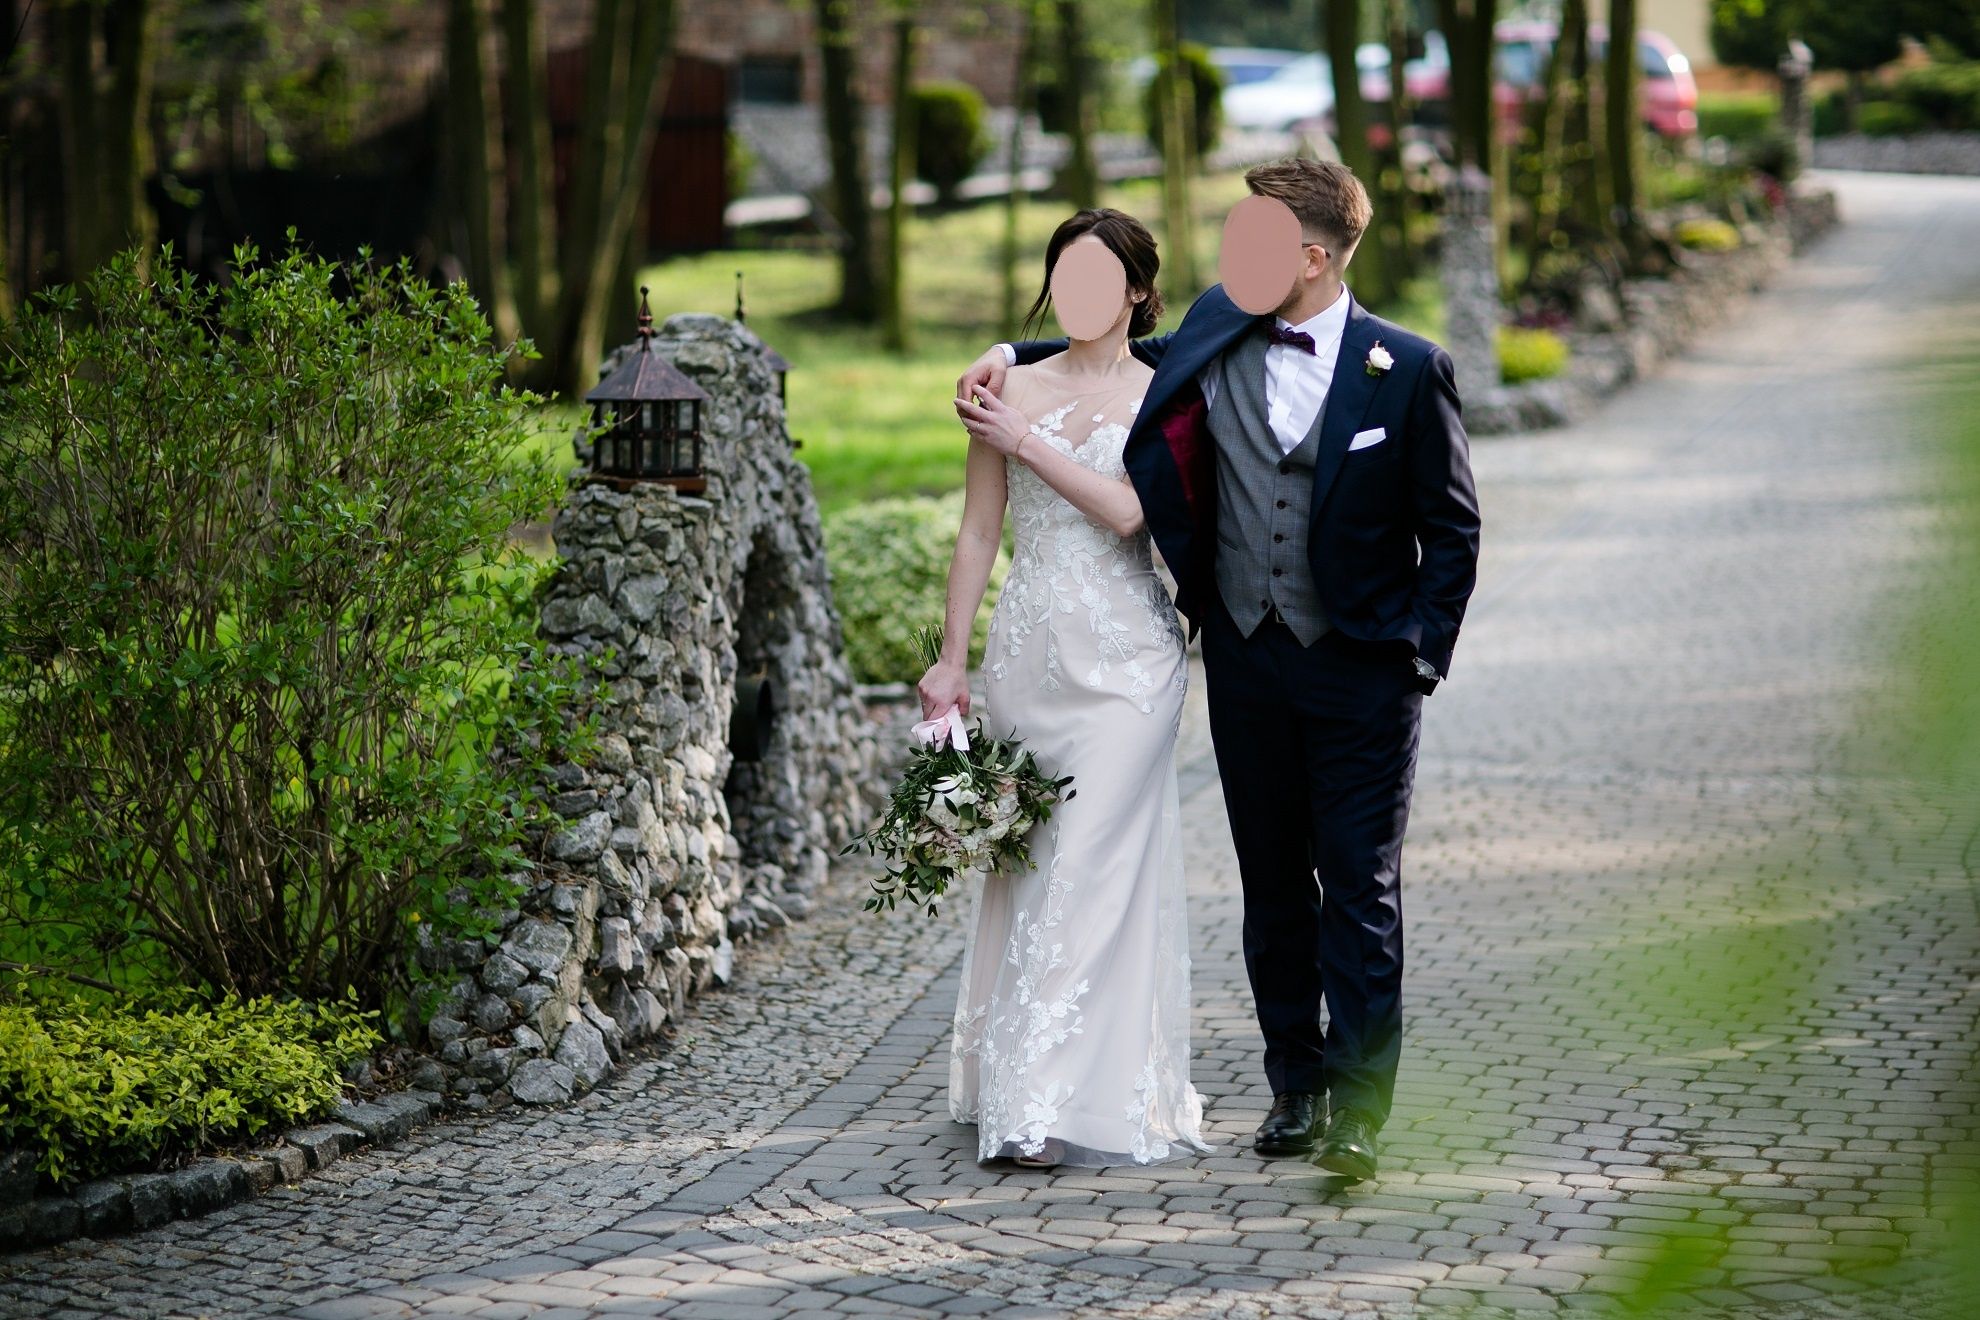 Suknia ślubna 34 36 koronka pas ecru ivory róż wesele tiul jak kodym